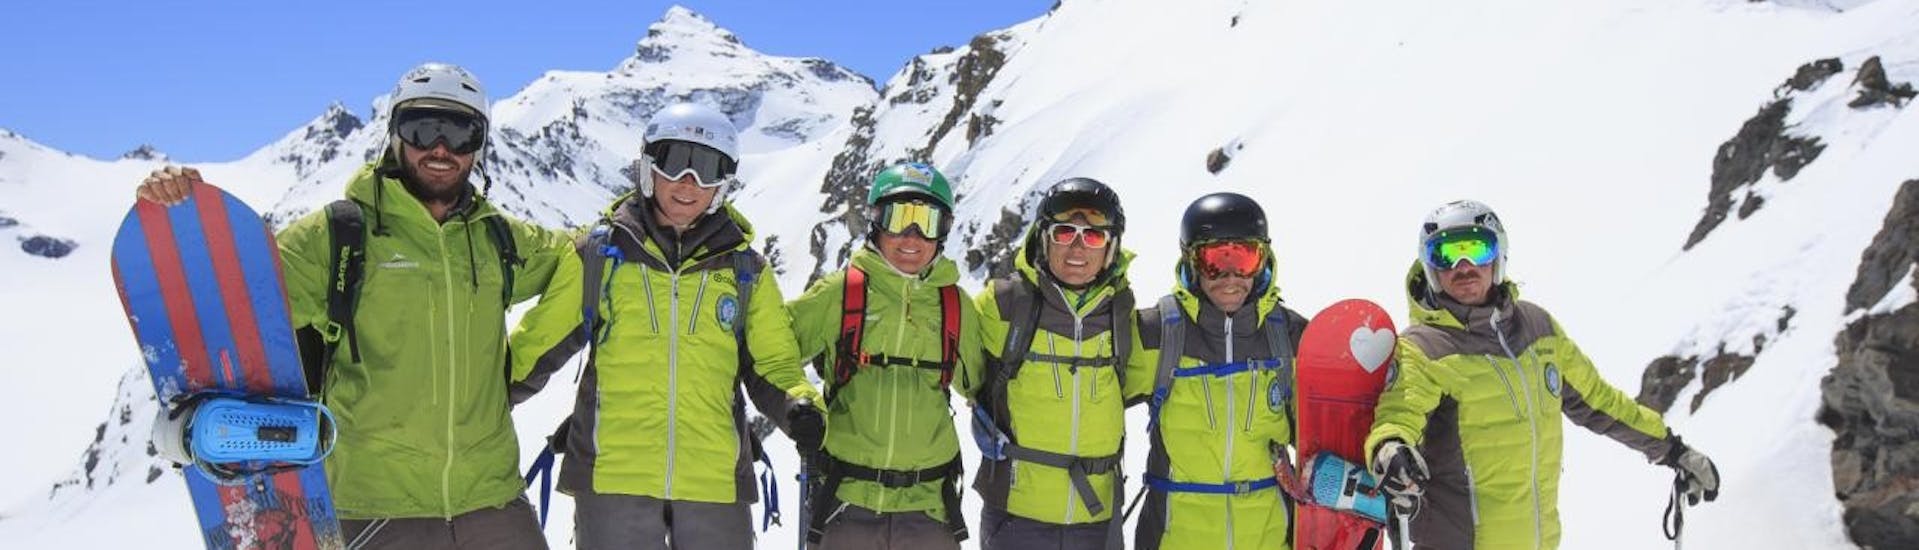 Snowboardkurse für Erwachsene für alle Levels - Maximal 7 pro Gruppe.